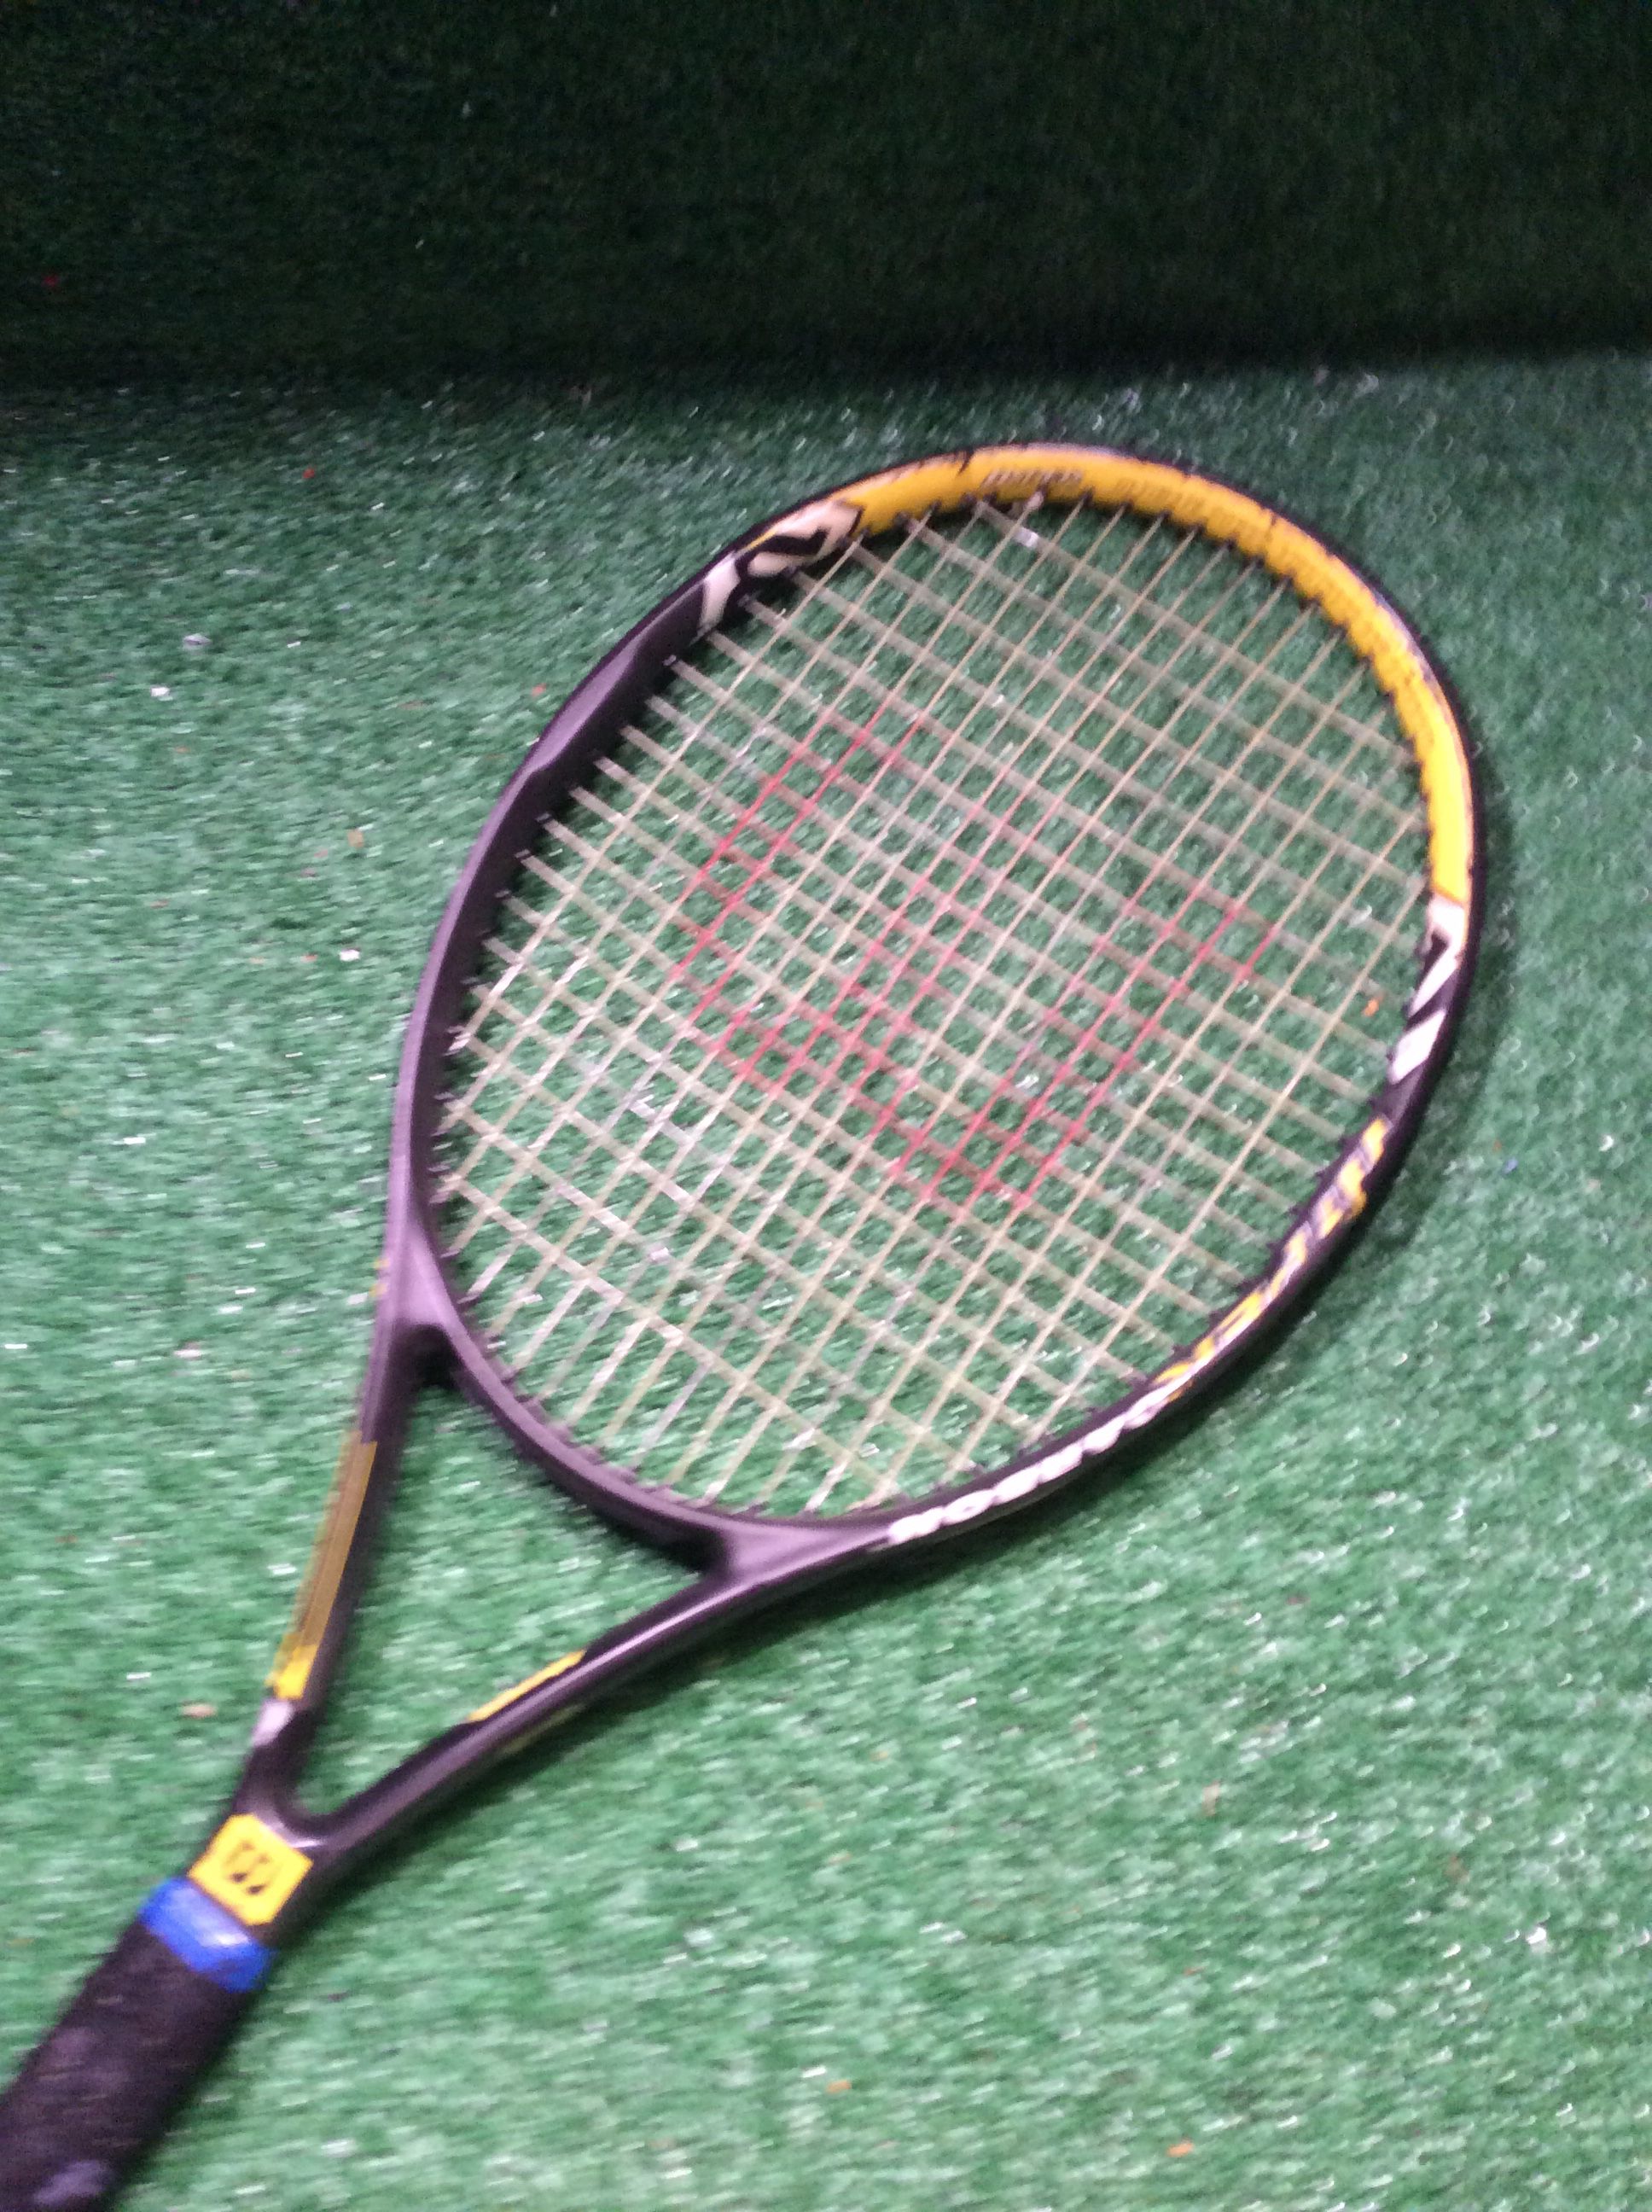 Wilson Hyper Hammer 6.3 Tennis Racket, 27.5